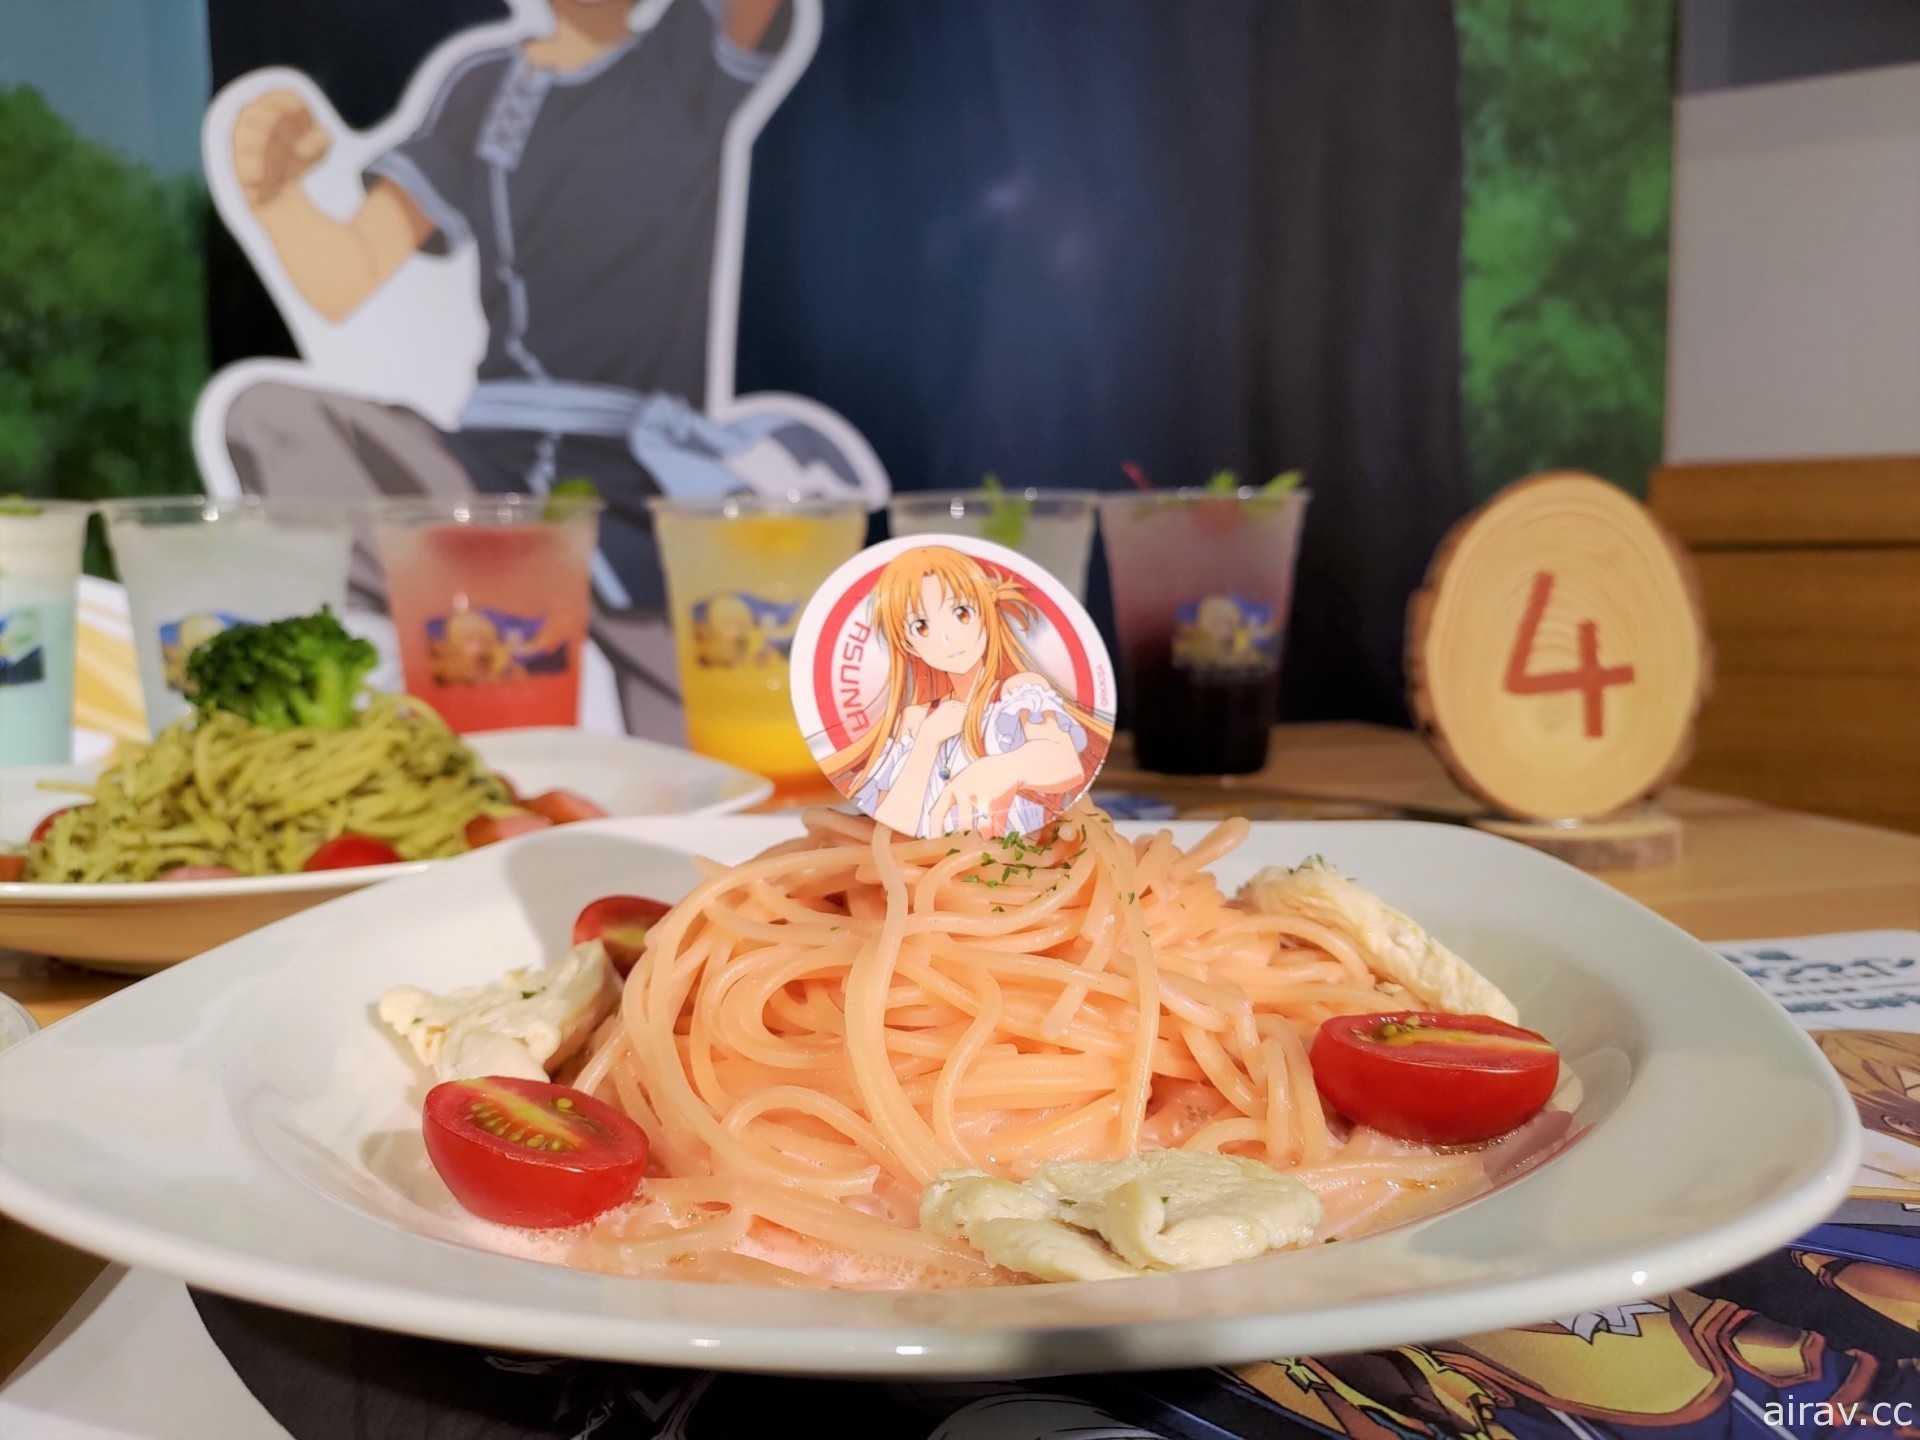 《刀劍神域》主題快閃餐廳 今起於西門武昌誠品店展開 提供外帶訂餐服務